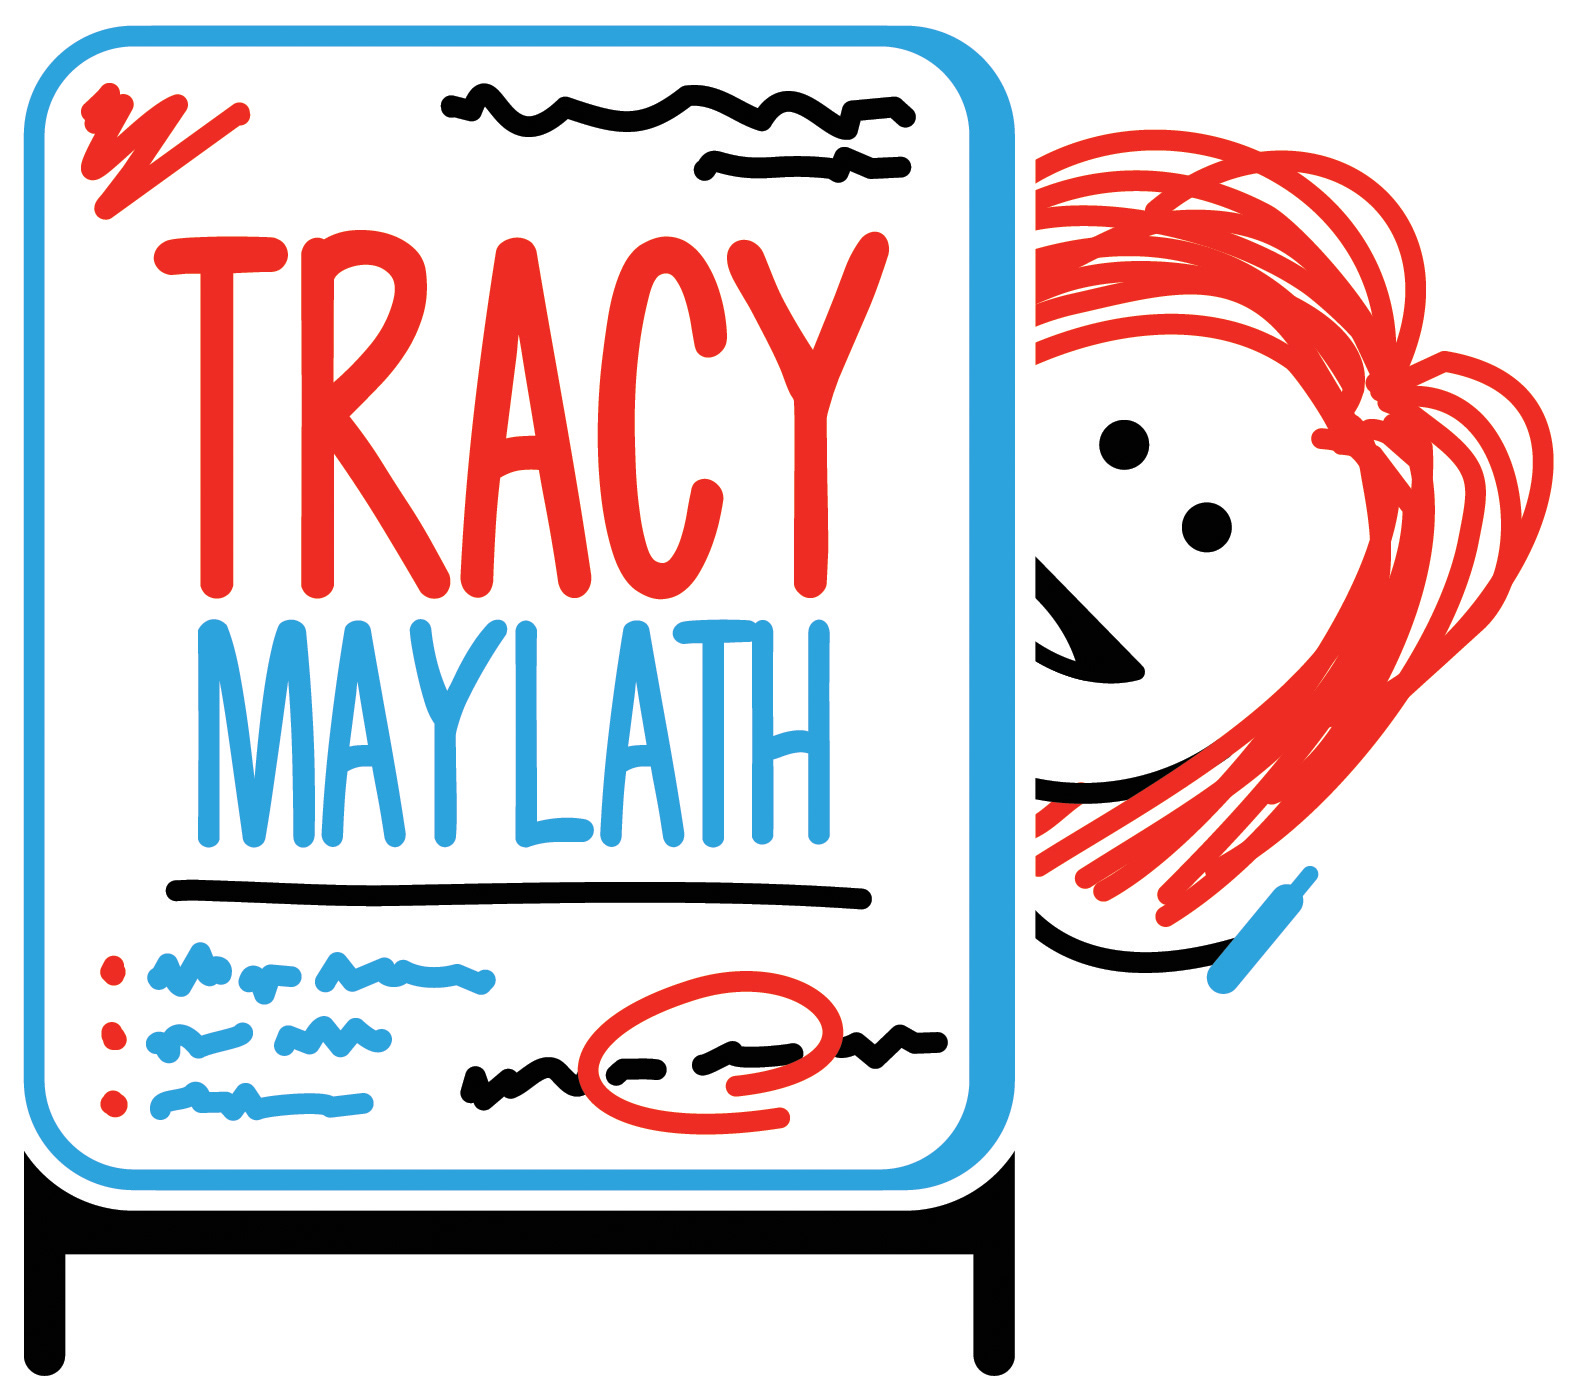 Tracy Maylath profile pic